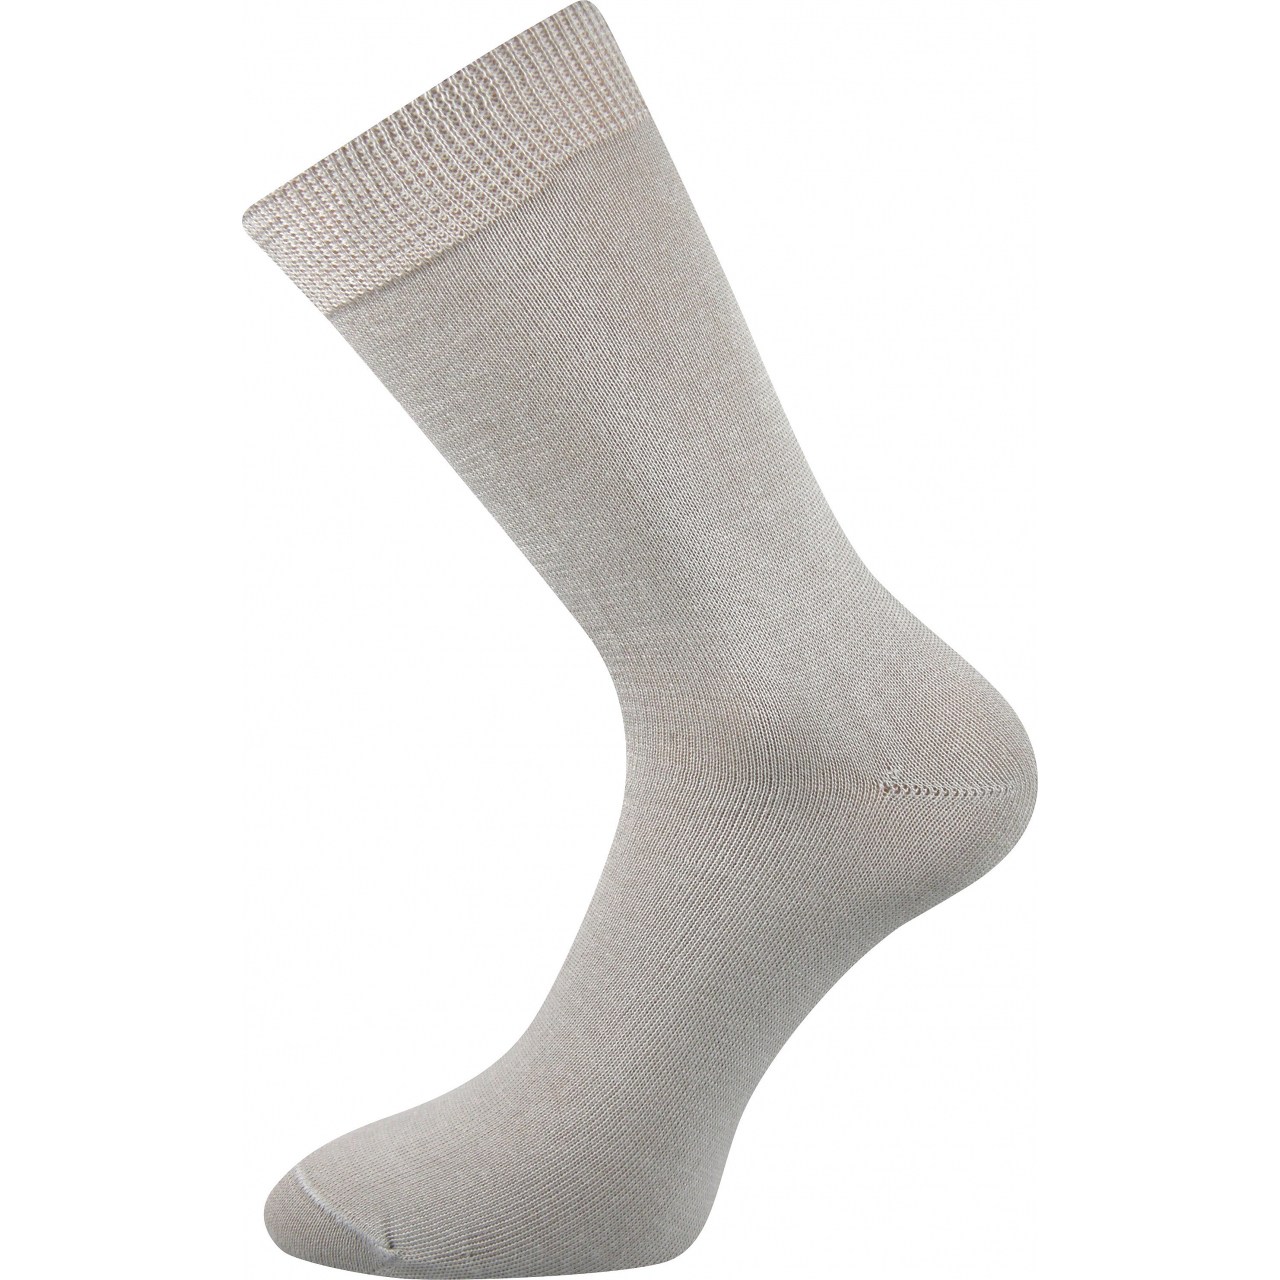 Ponožky dámské Lonka Fany - světle šedé, 35-37